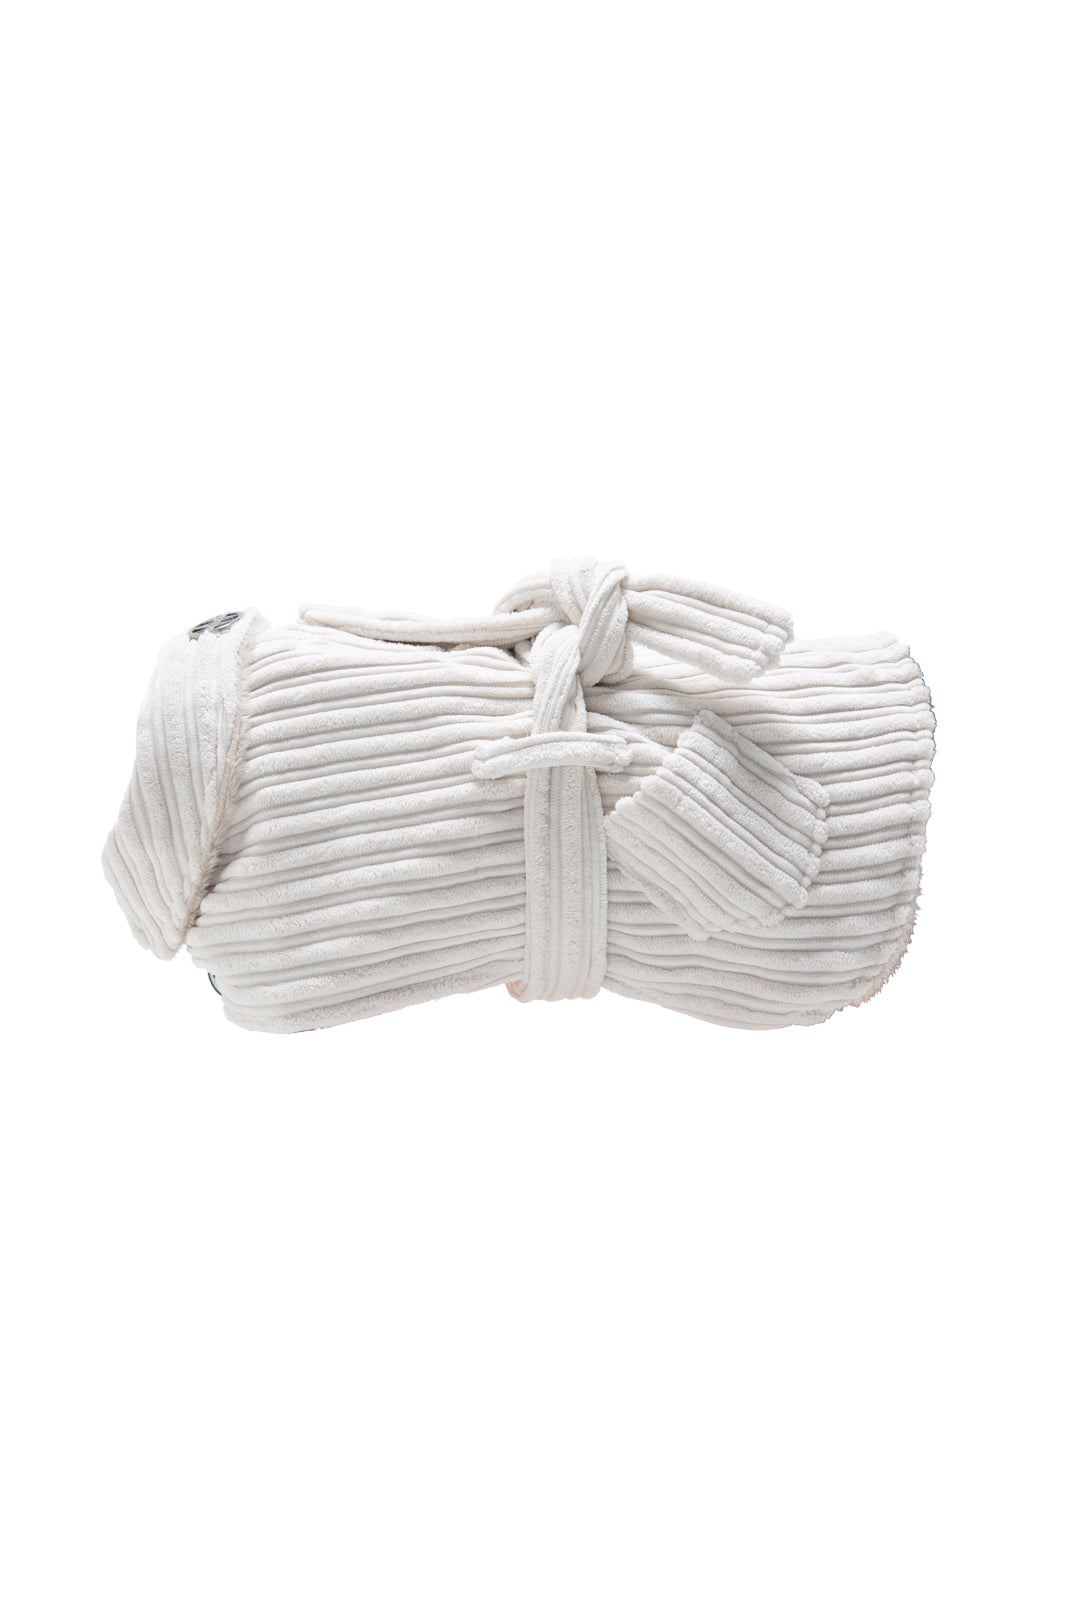 Cordumhang mit Gürtel und Seitentaschen – Weiß